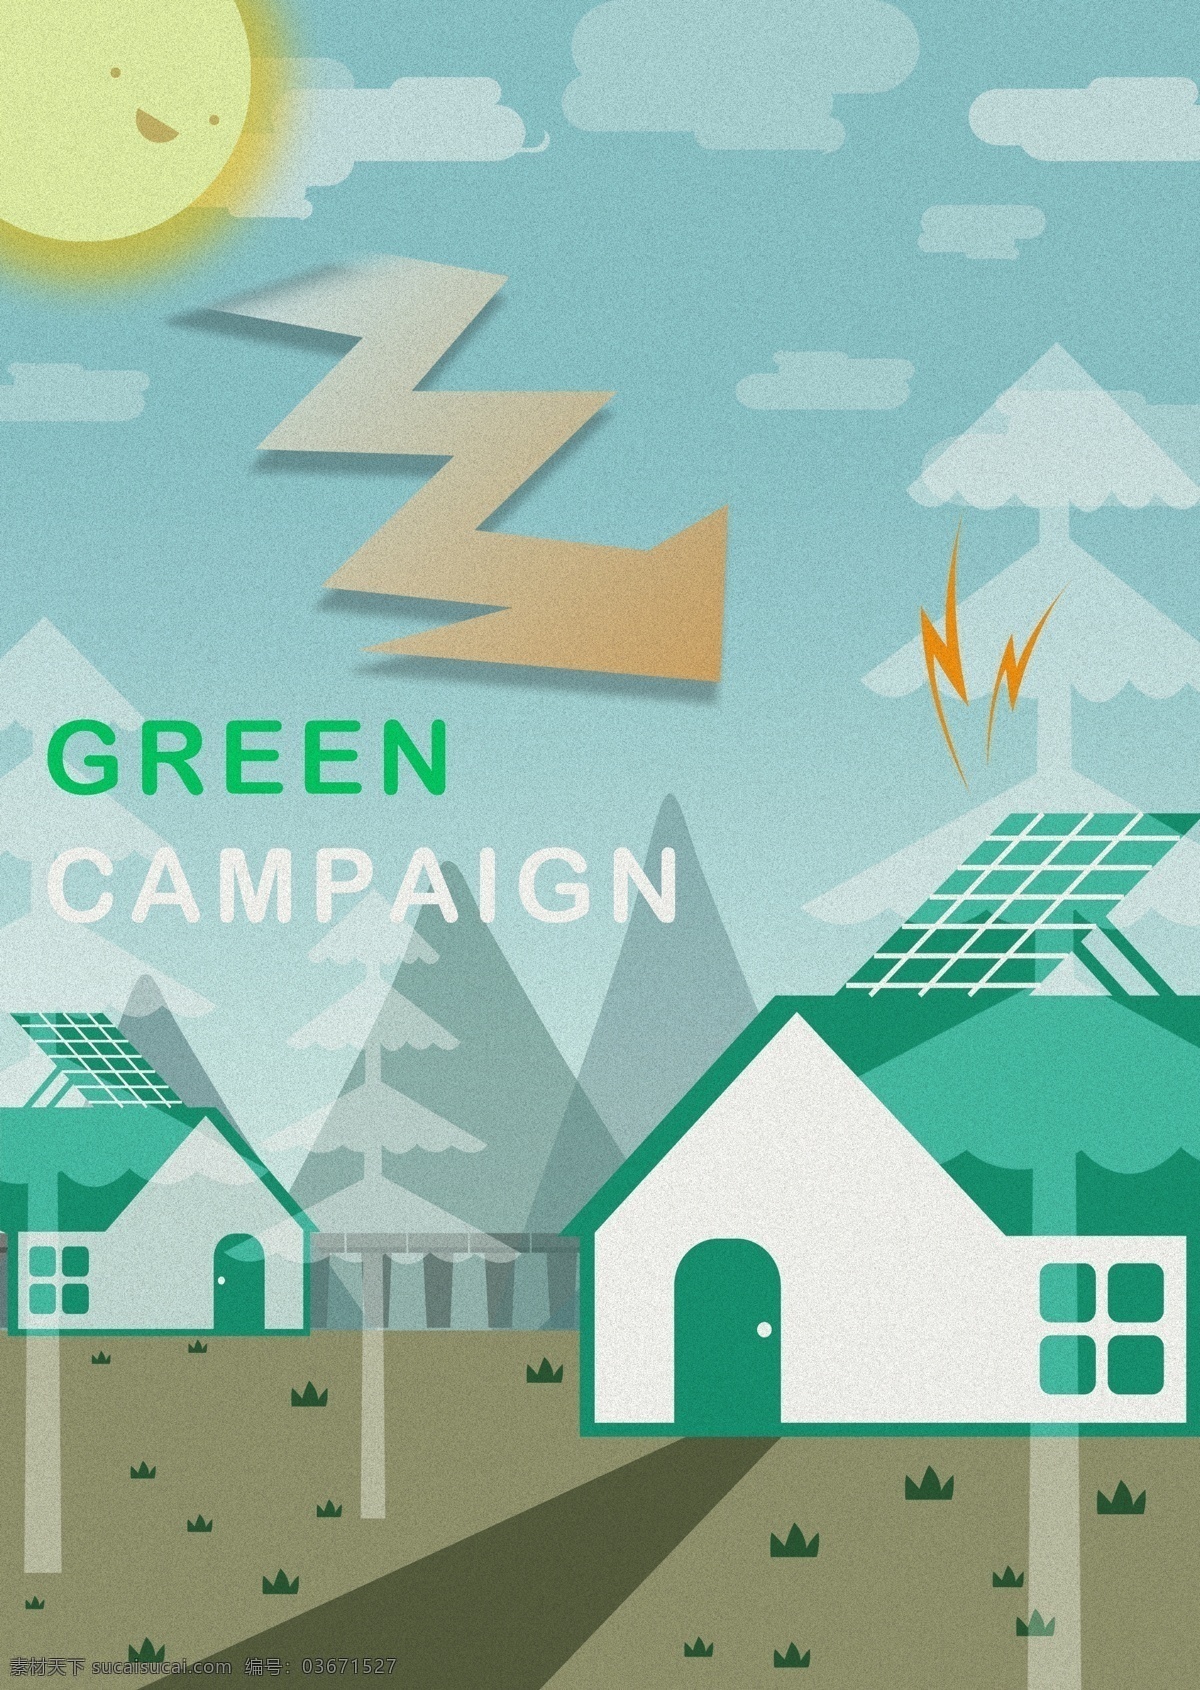 太阳 房子 树木 绿色环保 环境保护 环保 节能 绿色能源 生态保护 生态平衡 广告设计模板 psd素材 青色 天蓝色